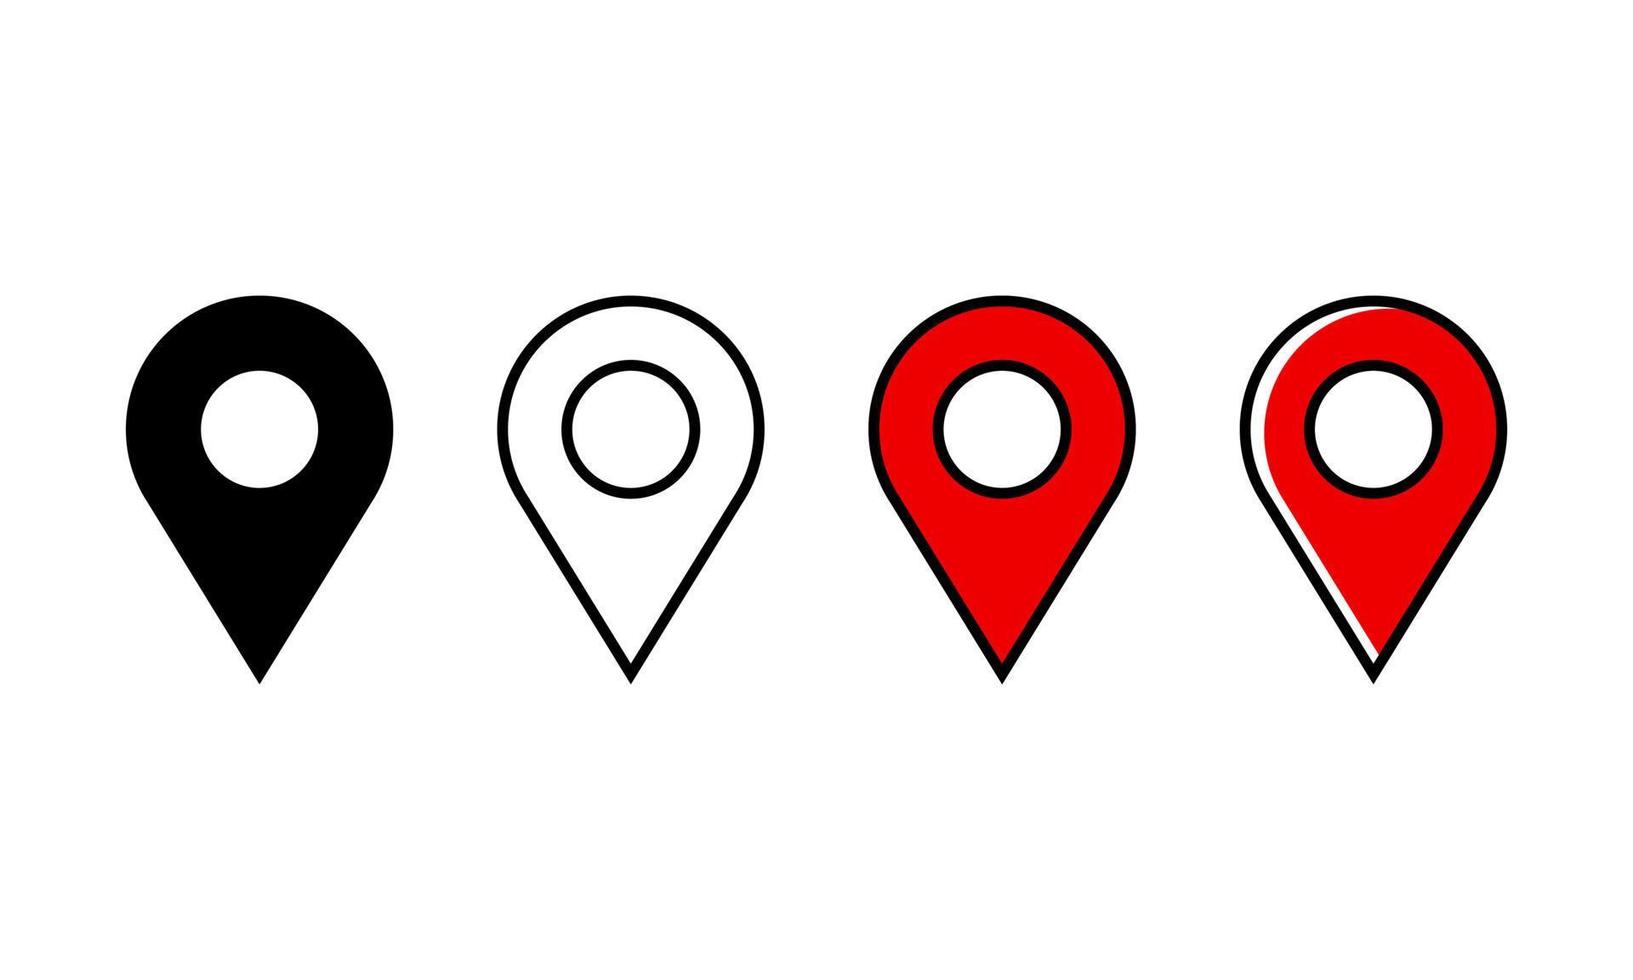 conjunto de iconos de pin del localizador de mapas. colección de iconos de localizador de mercado en estilo sólido, delineado, delineado en color y lineal. perfecto para el elemento de diseño de la aplicación de mapa. vector